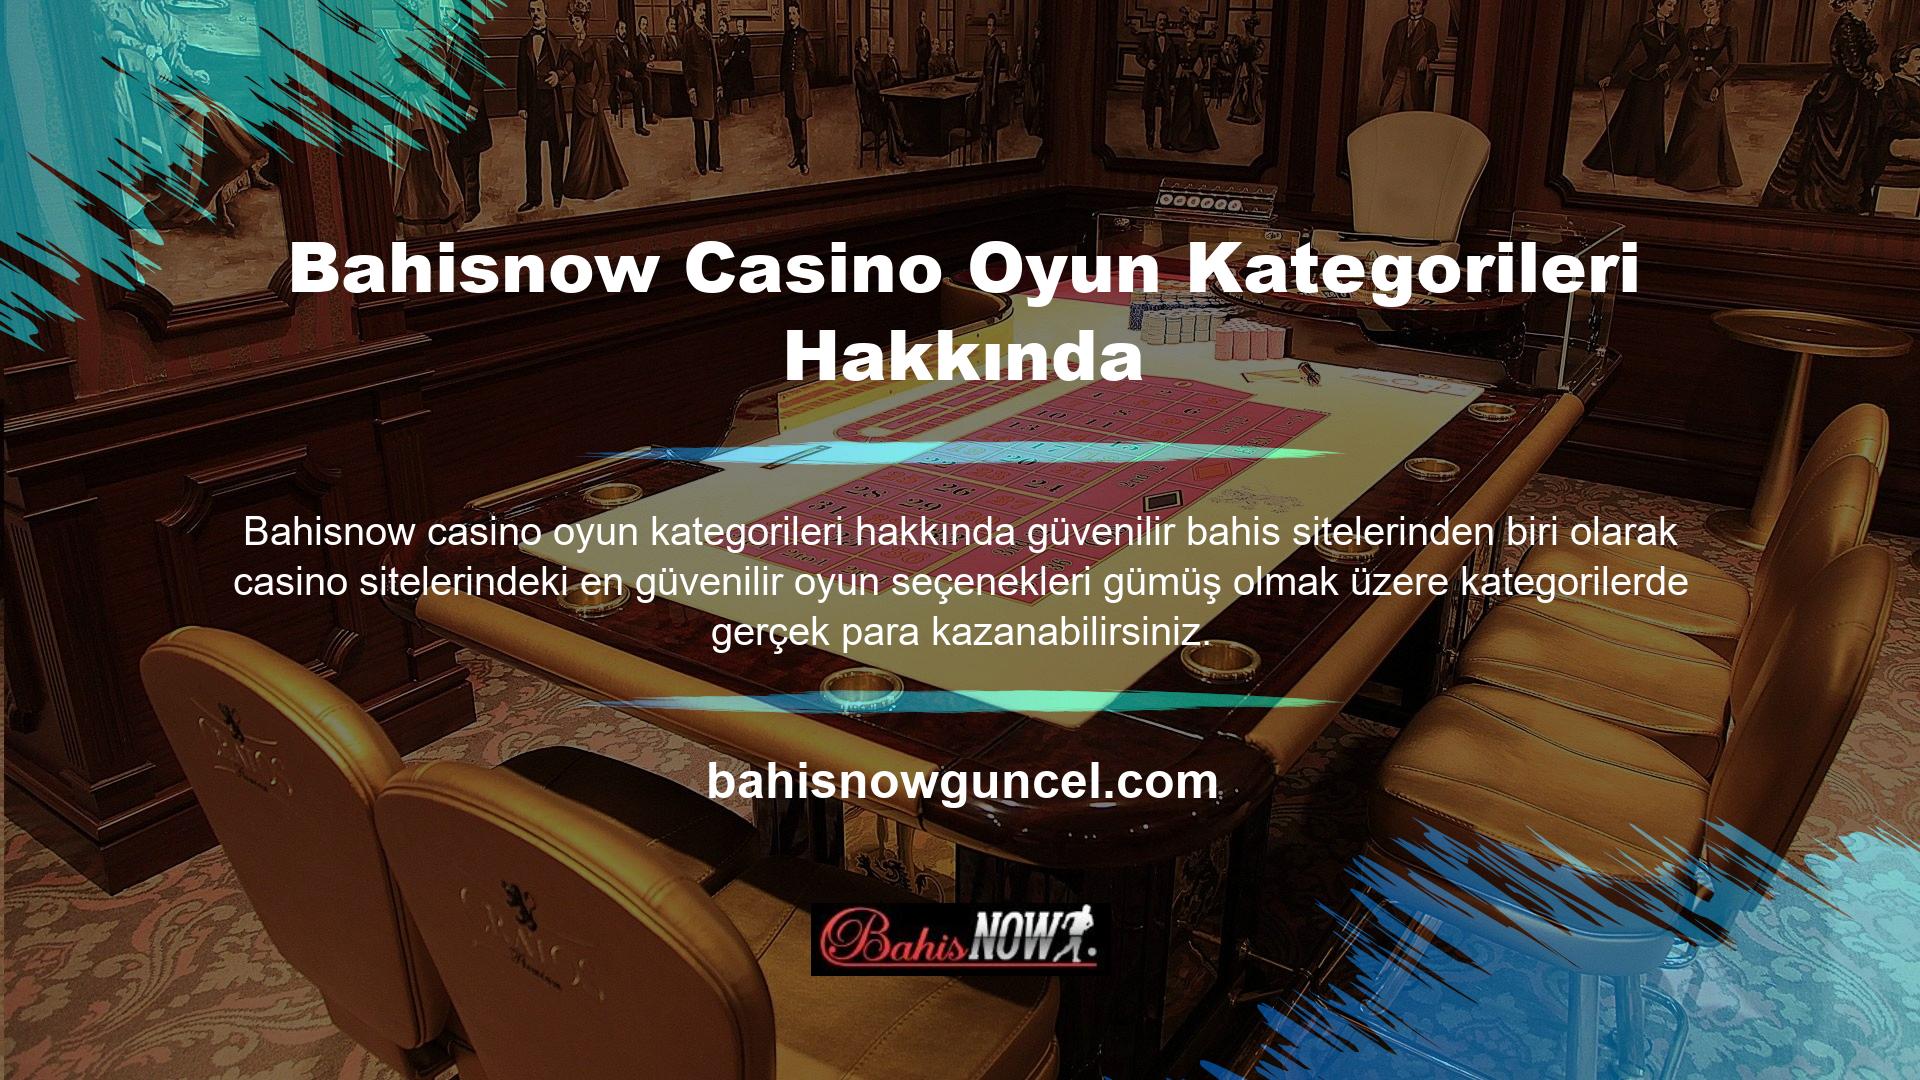 Bahis kategorisinde canlı casino oyunlarının yerini alan Rulet, Blackjack, Bakara, Casino Hold'em, Andal Bahar ve Evolution Lobby gibi oyunlar bulunmaktadır